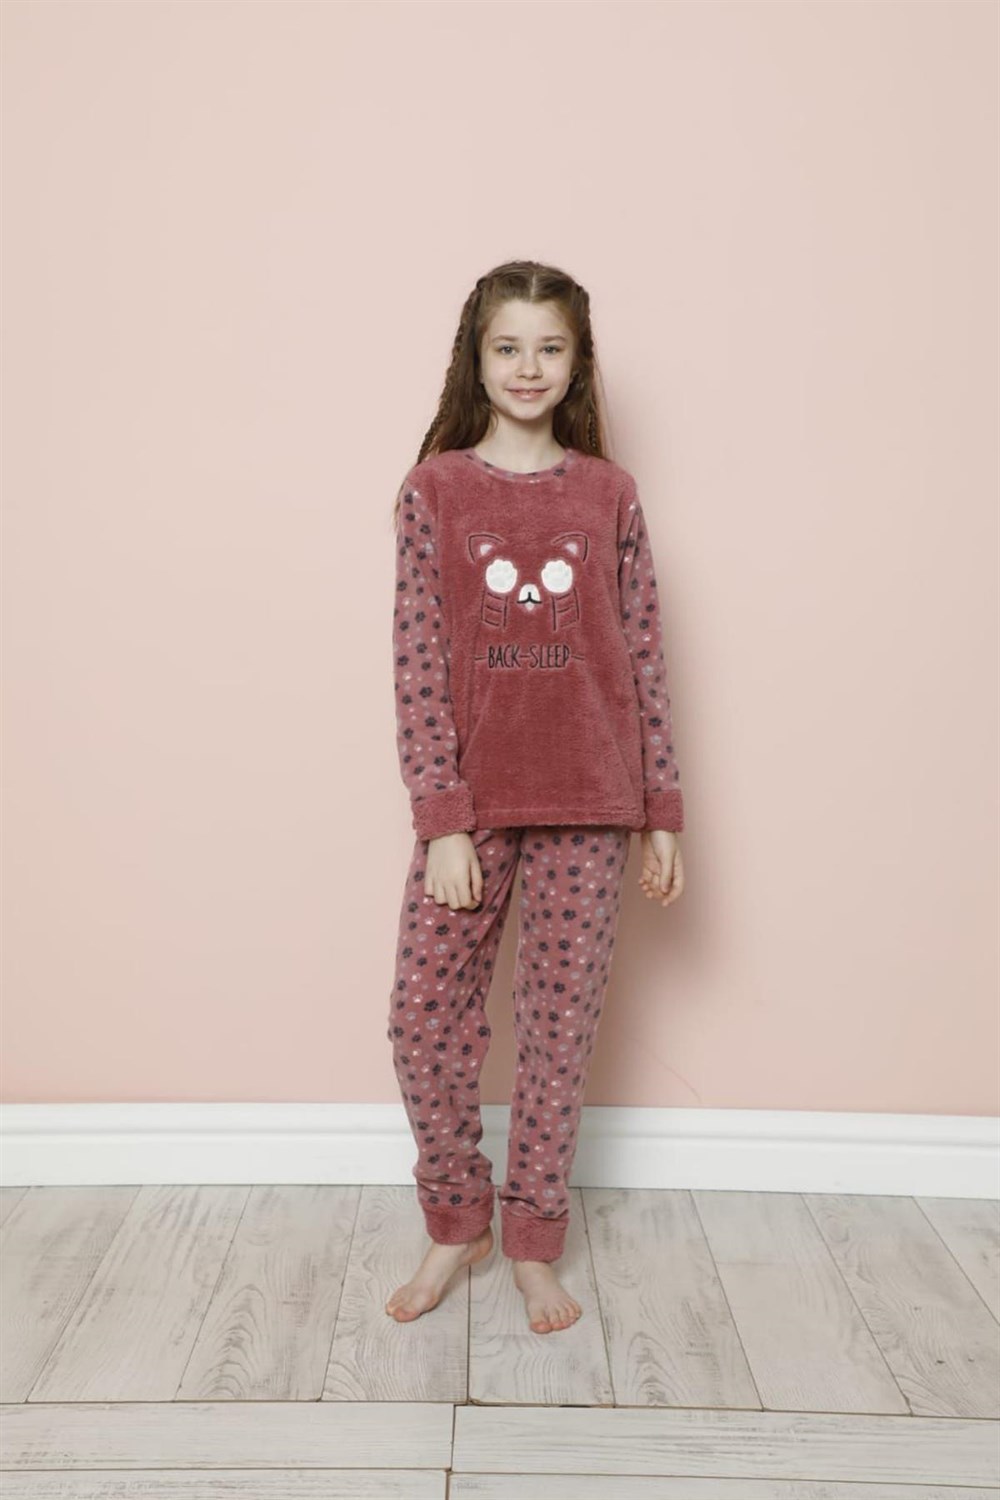 SEBOTEKS Pati Desenli Peluş Polar Kız Çocuk Pijama Takımı 20239